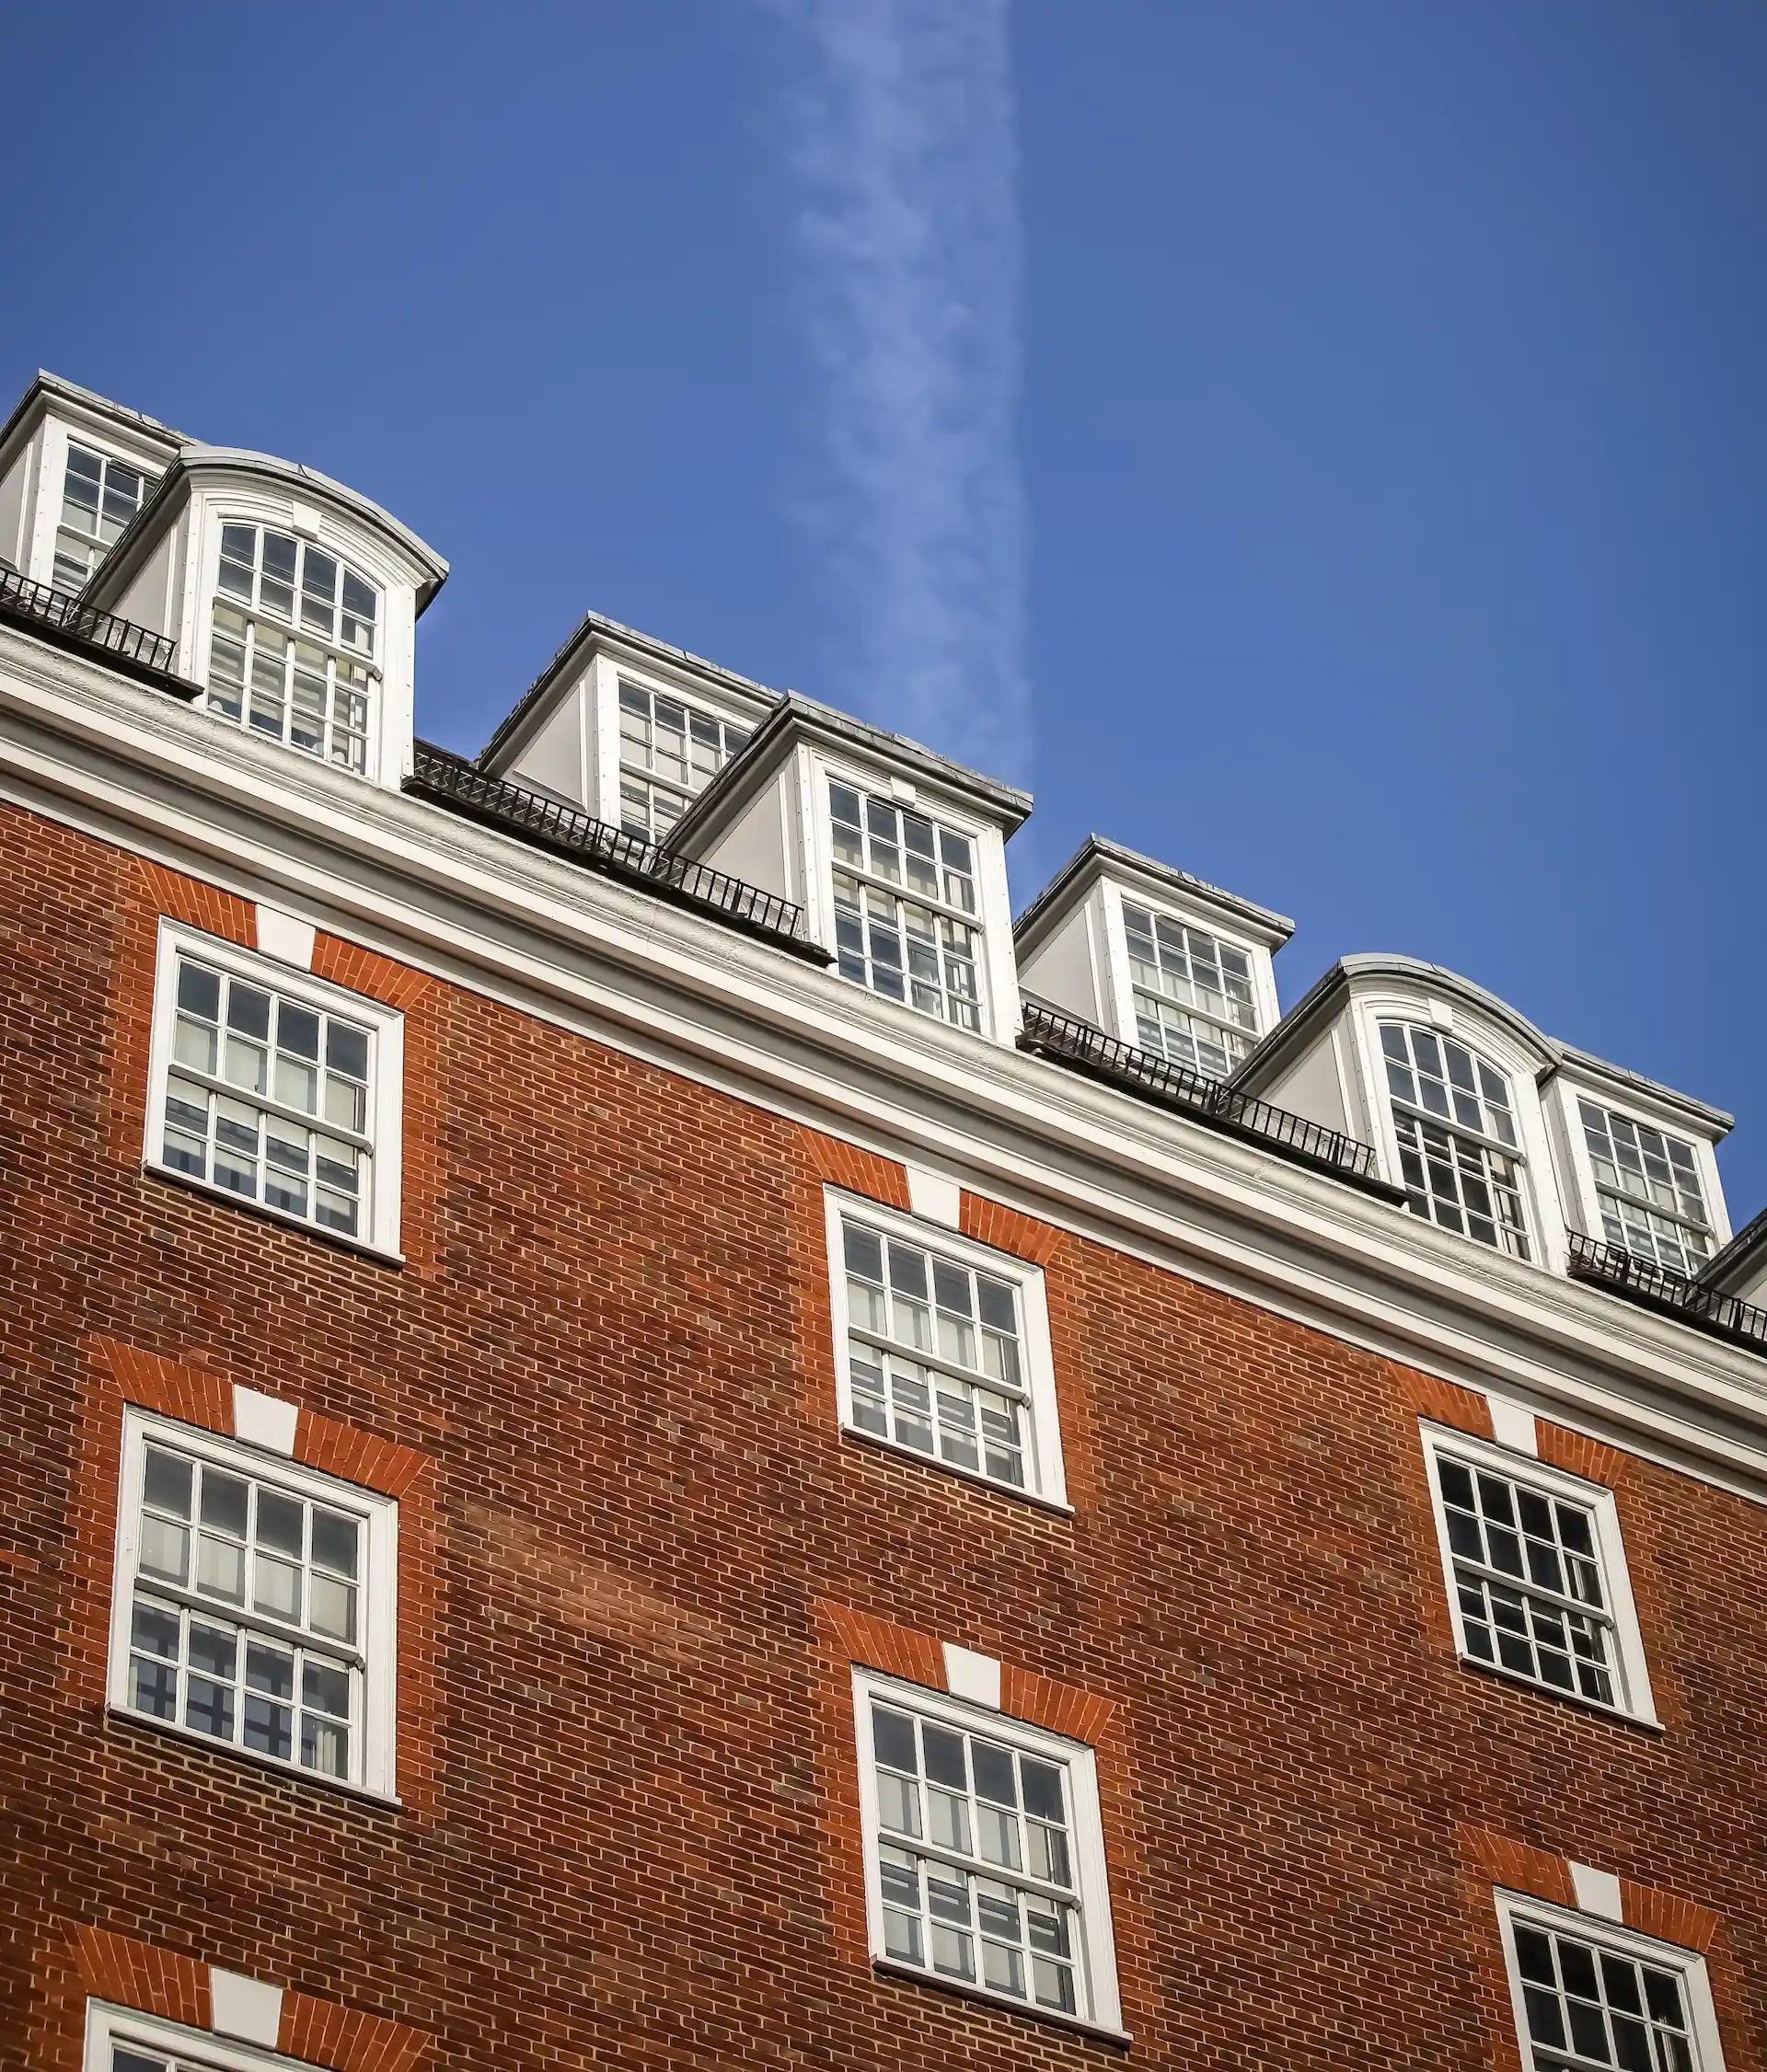 REVIEW The Bloomsbury Londres: imperdible, original y uno de los mejores hoteles